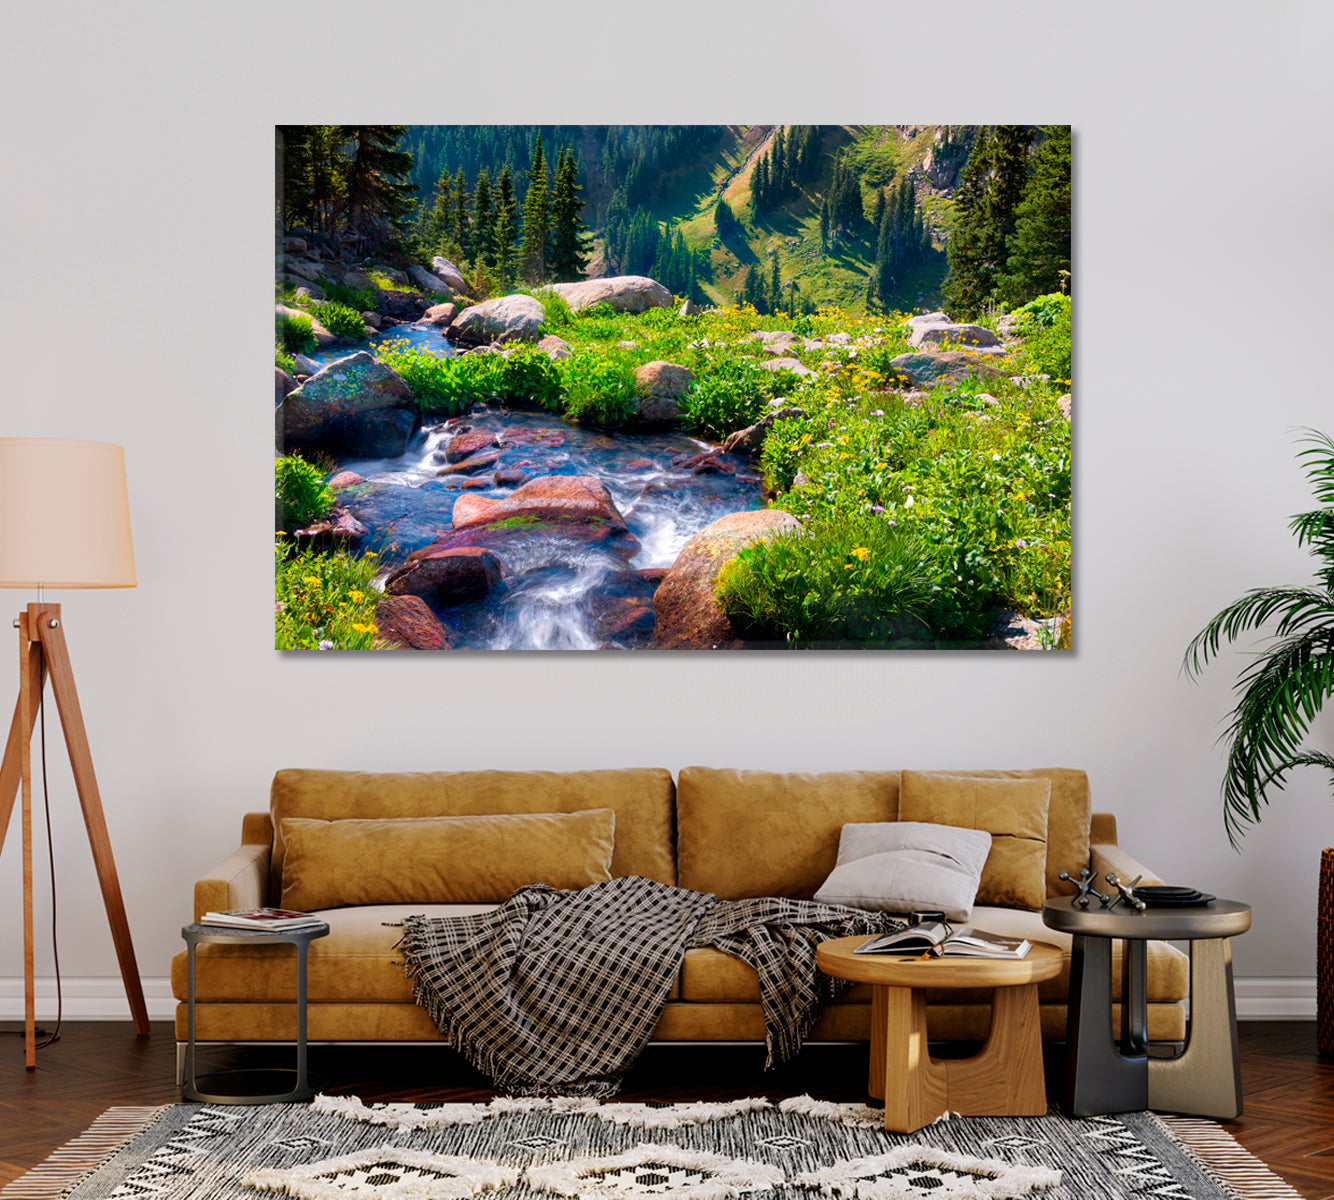 Nature Landscape with Boulder Creek River Canvas Print-Canvas Print-CetArt-1 Panel-24x16 inches-CetArt